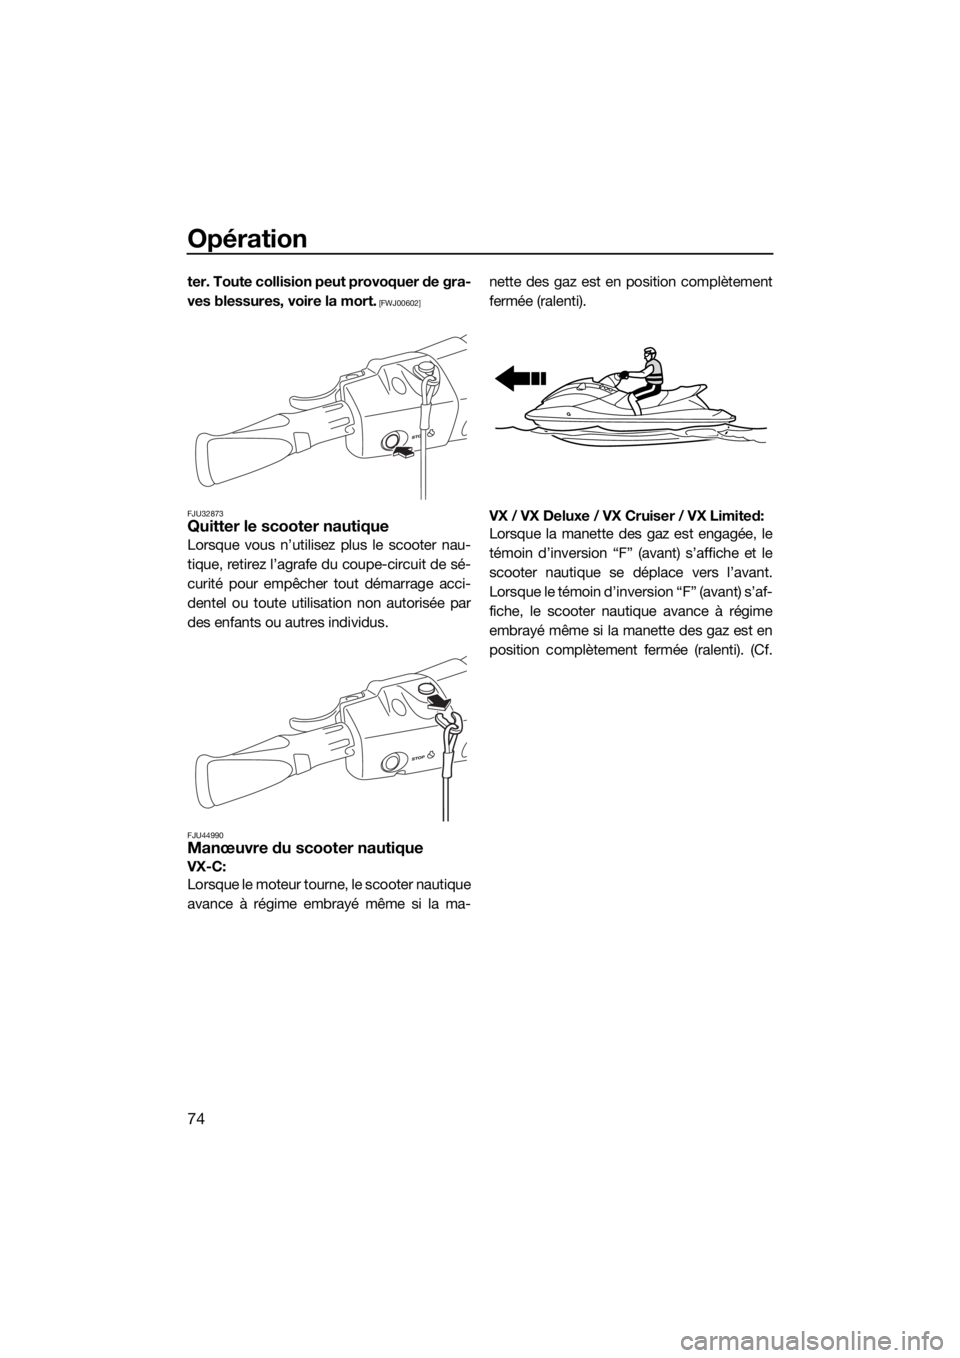 YAMAHA VX 2019  Notices Demploi (in French) Opération
74
ter. Toute collision peut provoquer de gra-
ves blessures, voire la mort.
 [FWJ00602]
FJU32873
Quitter le scooter nautique
Lorsque vous n’utilisez plus le scooter nau-
tique, retirez l